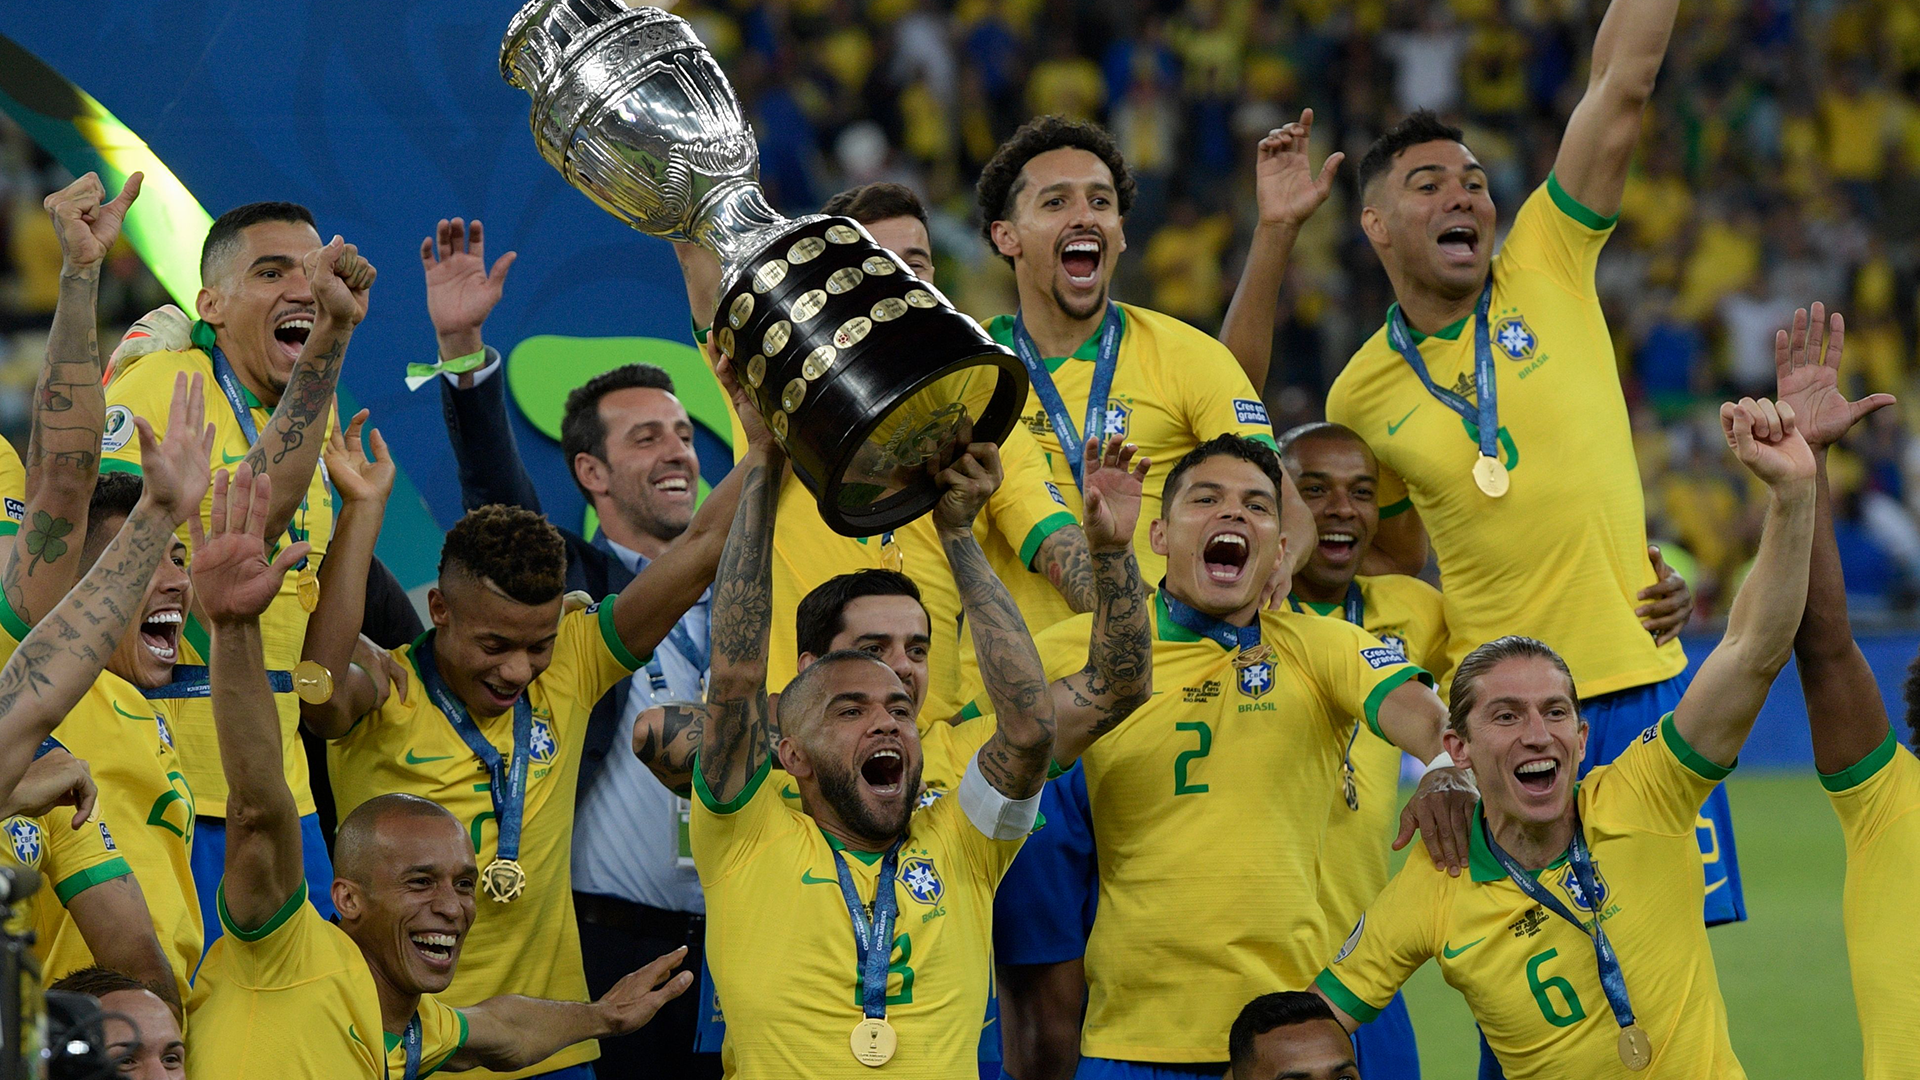 Grande final da Copa América 2021 - prévia e informações